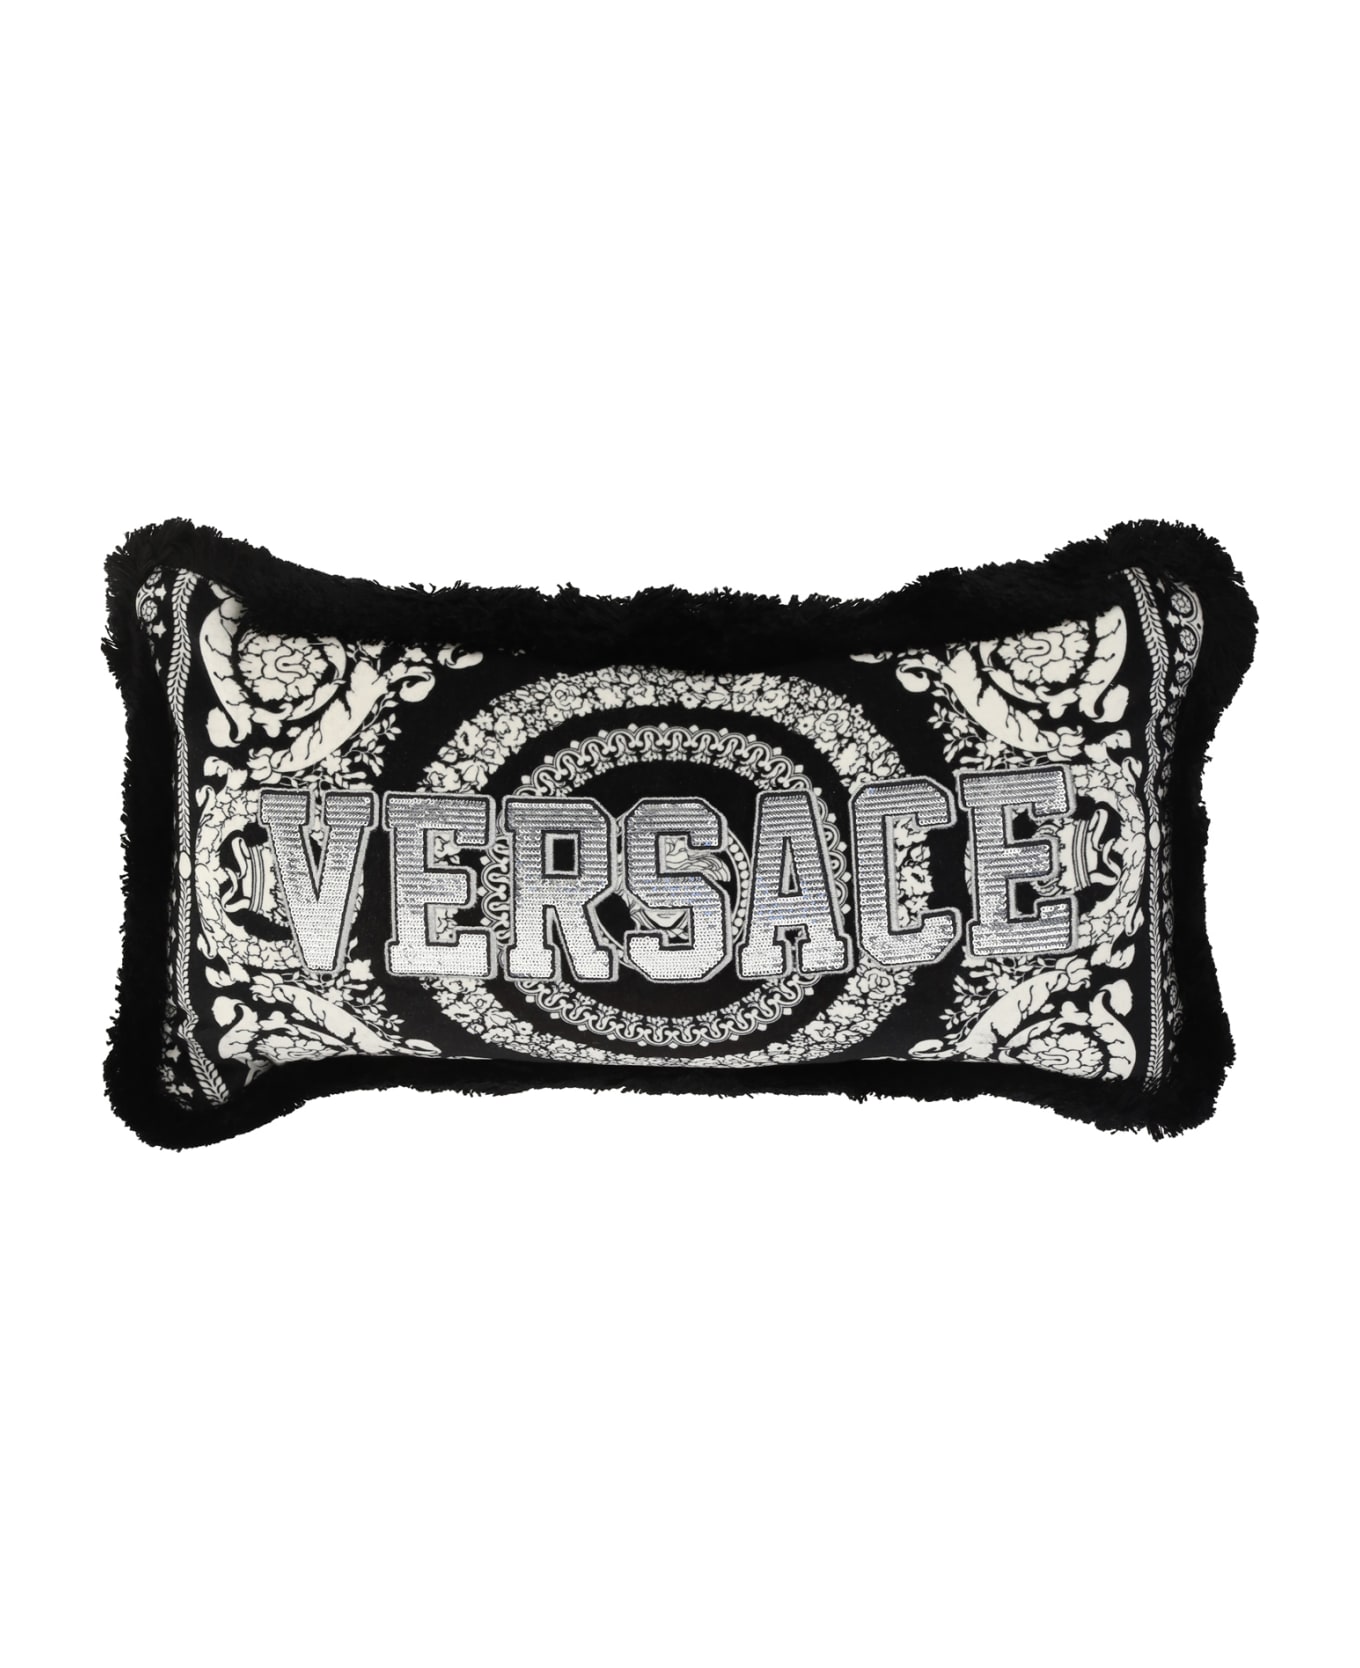 Versace Rectangular Pillow - Nero/bianco